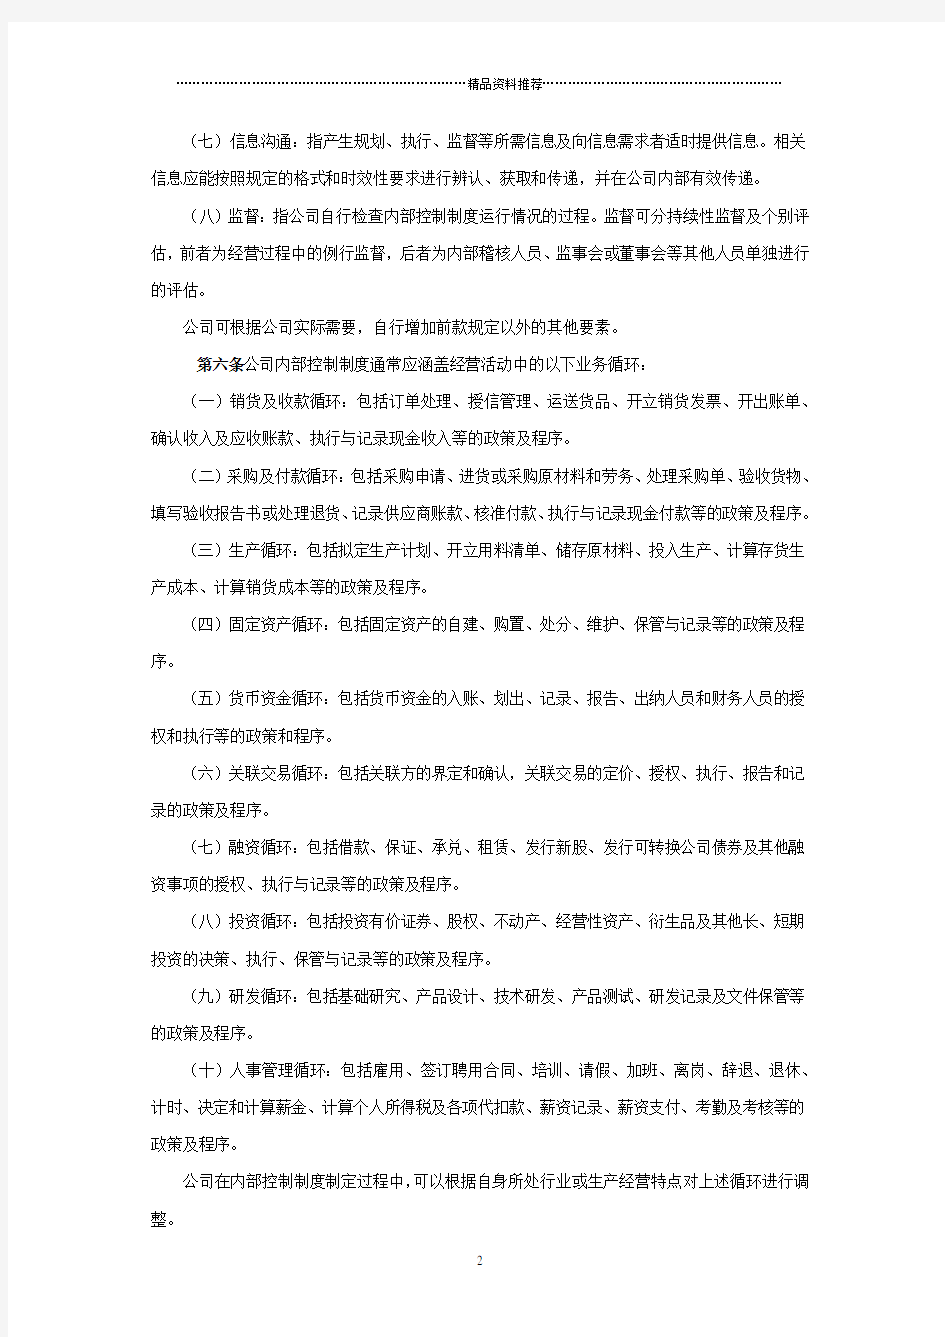 上海证券交易所上市公司内部控制制度指引